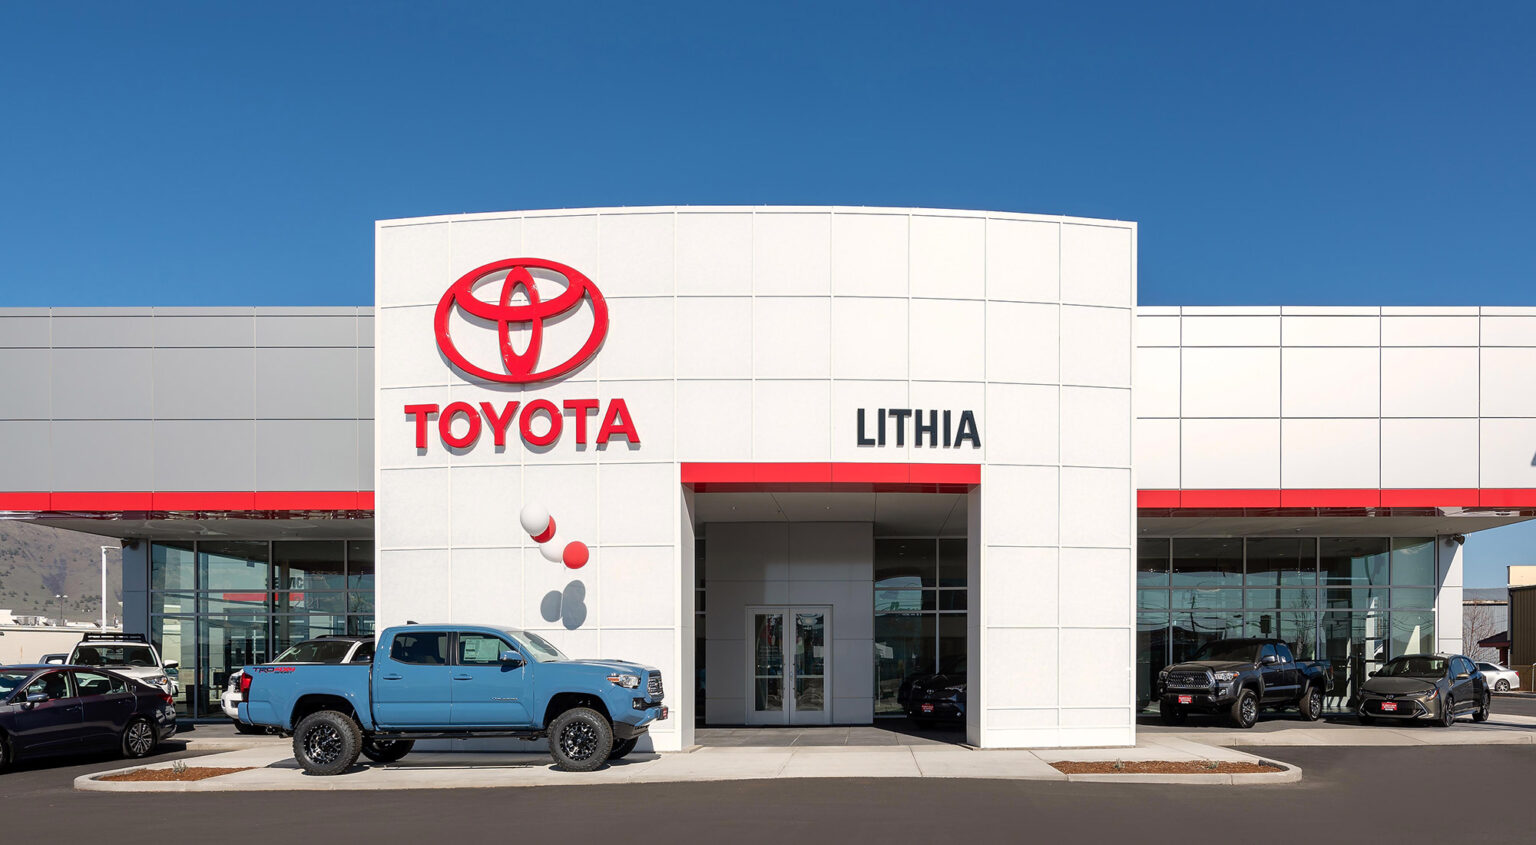 Lithia Toyota